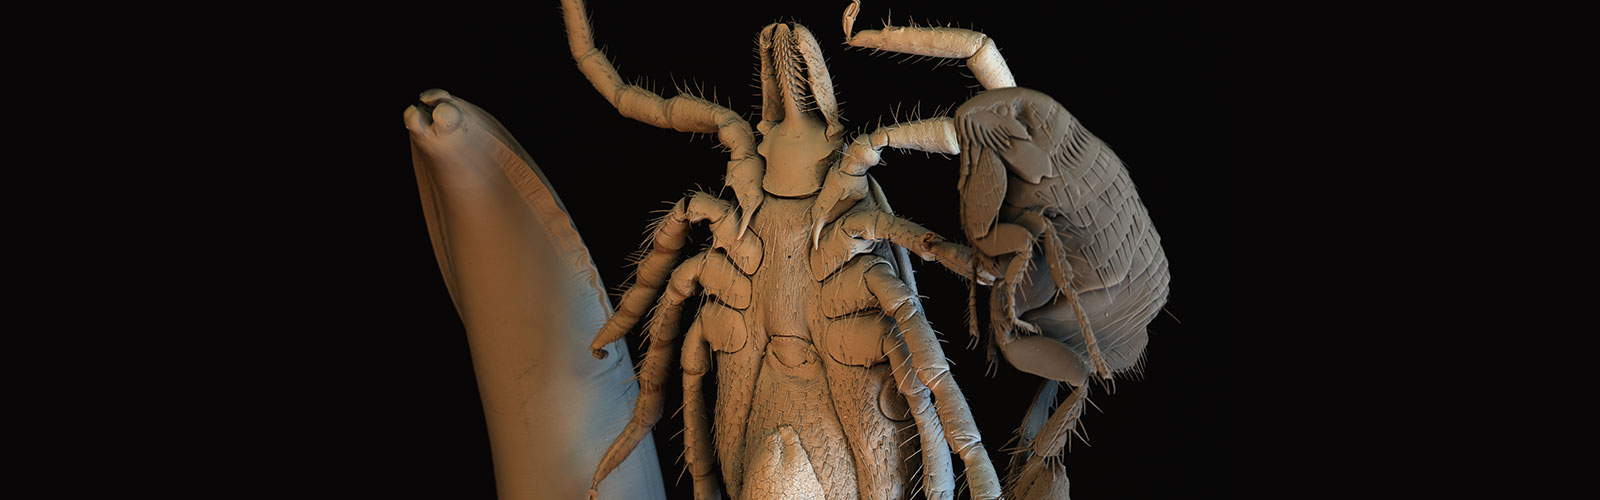 Parasiten: Zecke, Wurm und Floh unter einem rasterelektronischen Mikroskop